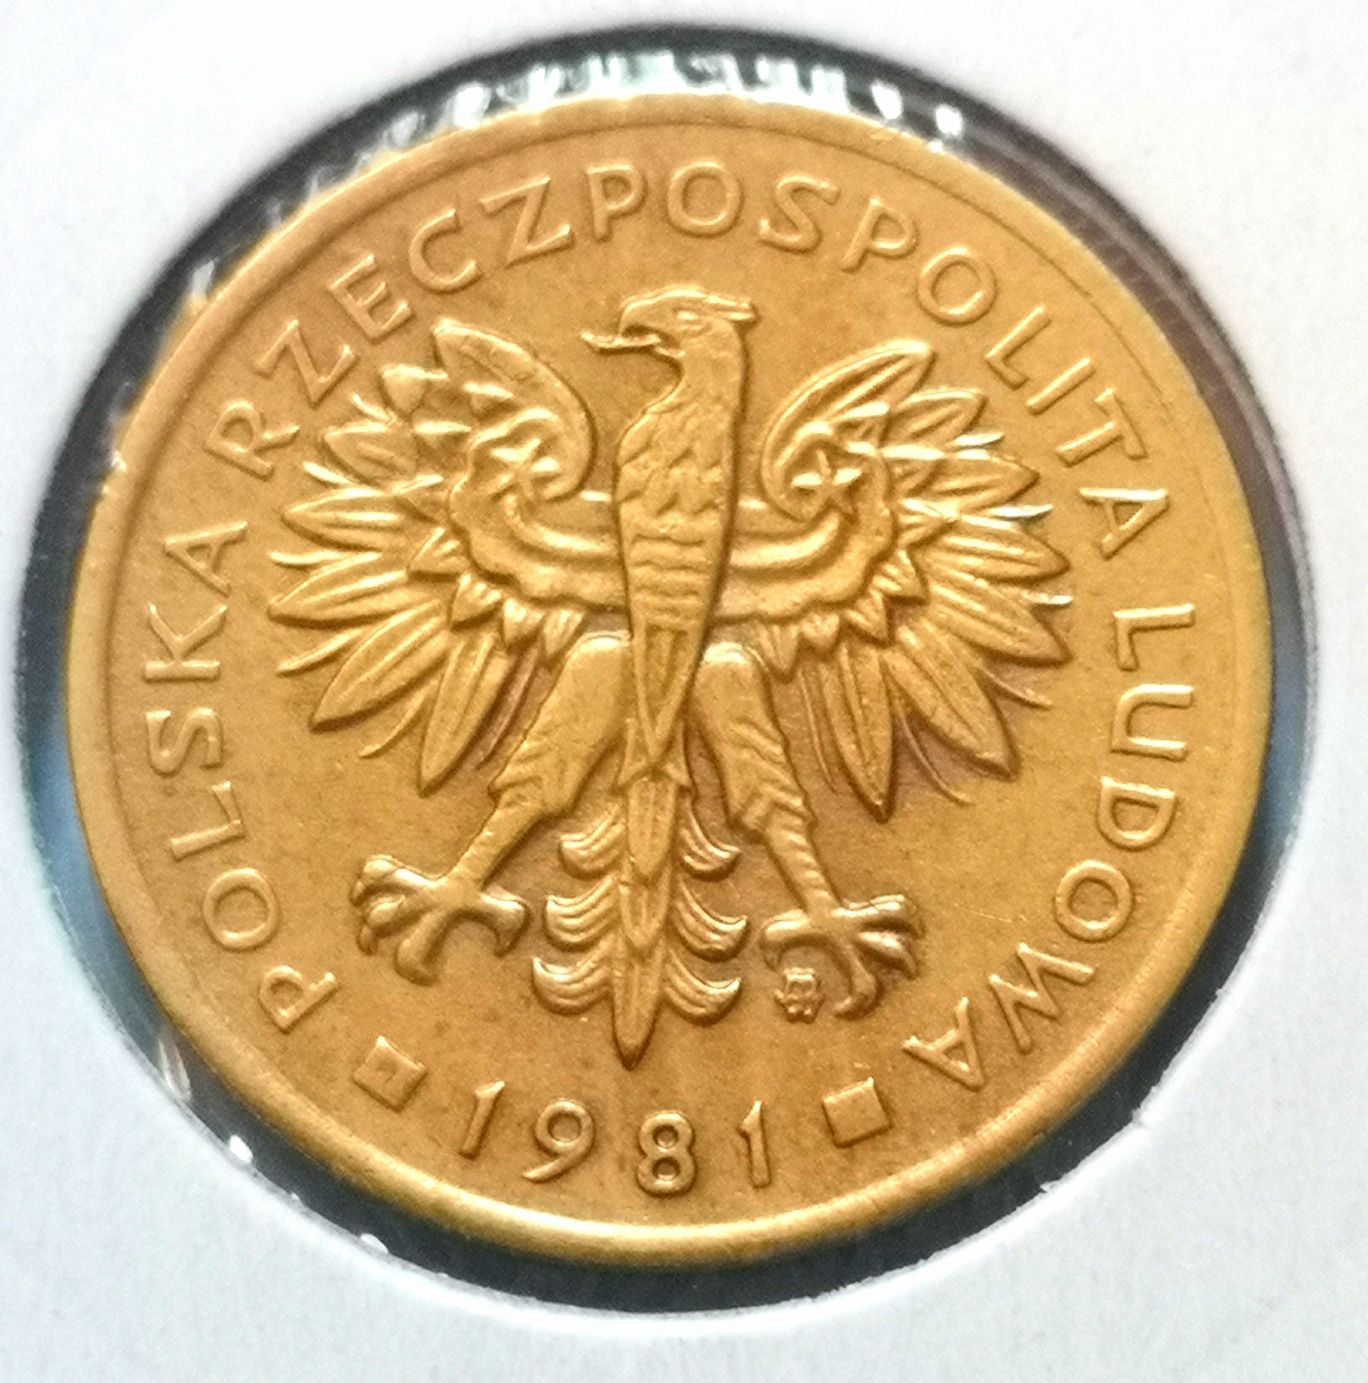 Moneta obiegowa prl 2zl 1981r